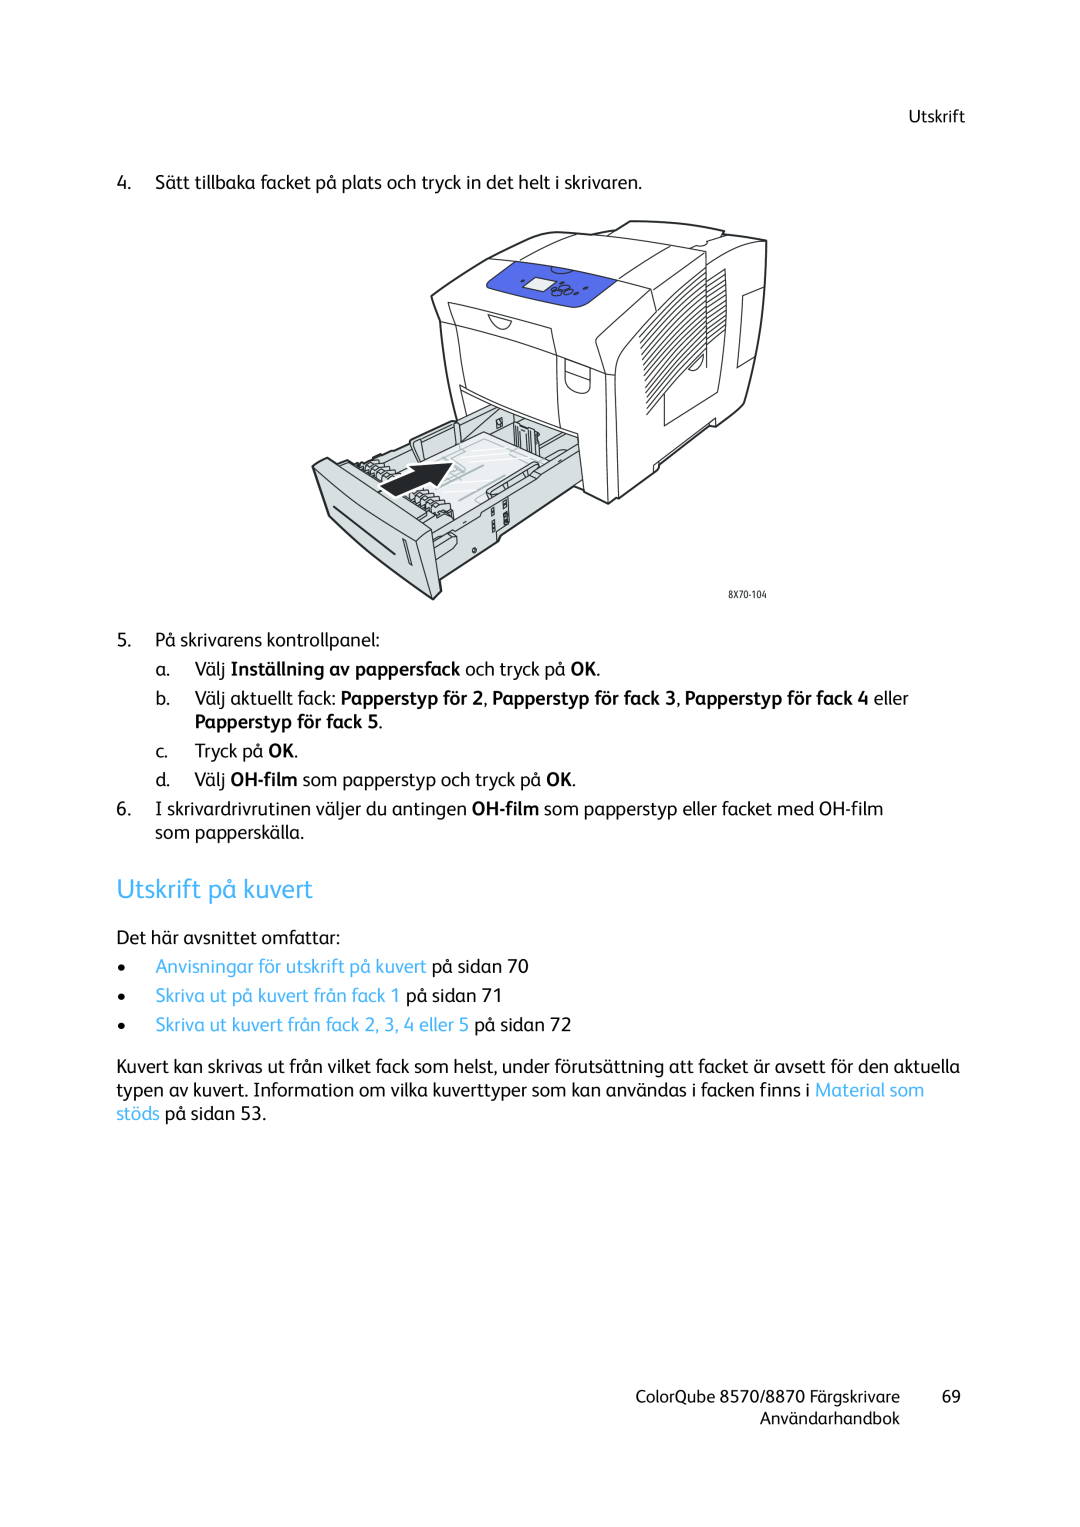 Xerox 8570 / 8870 manual Utskrift på kuvert, •Anvisningar för utskrift på kuvert på sidan 